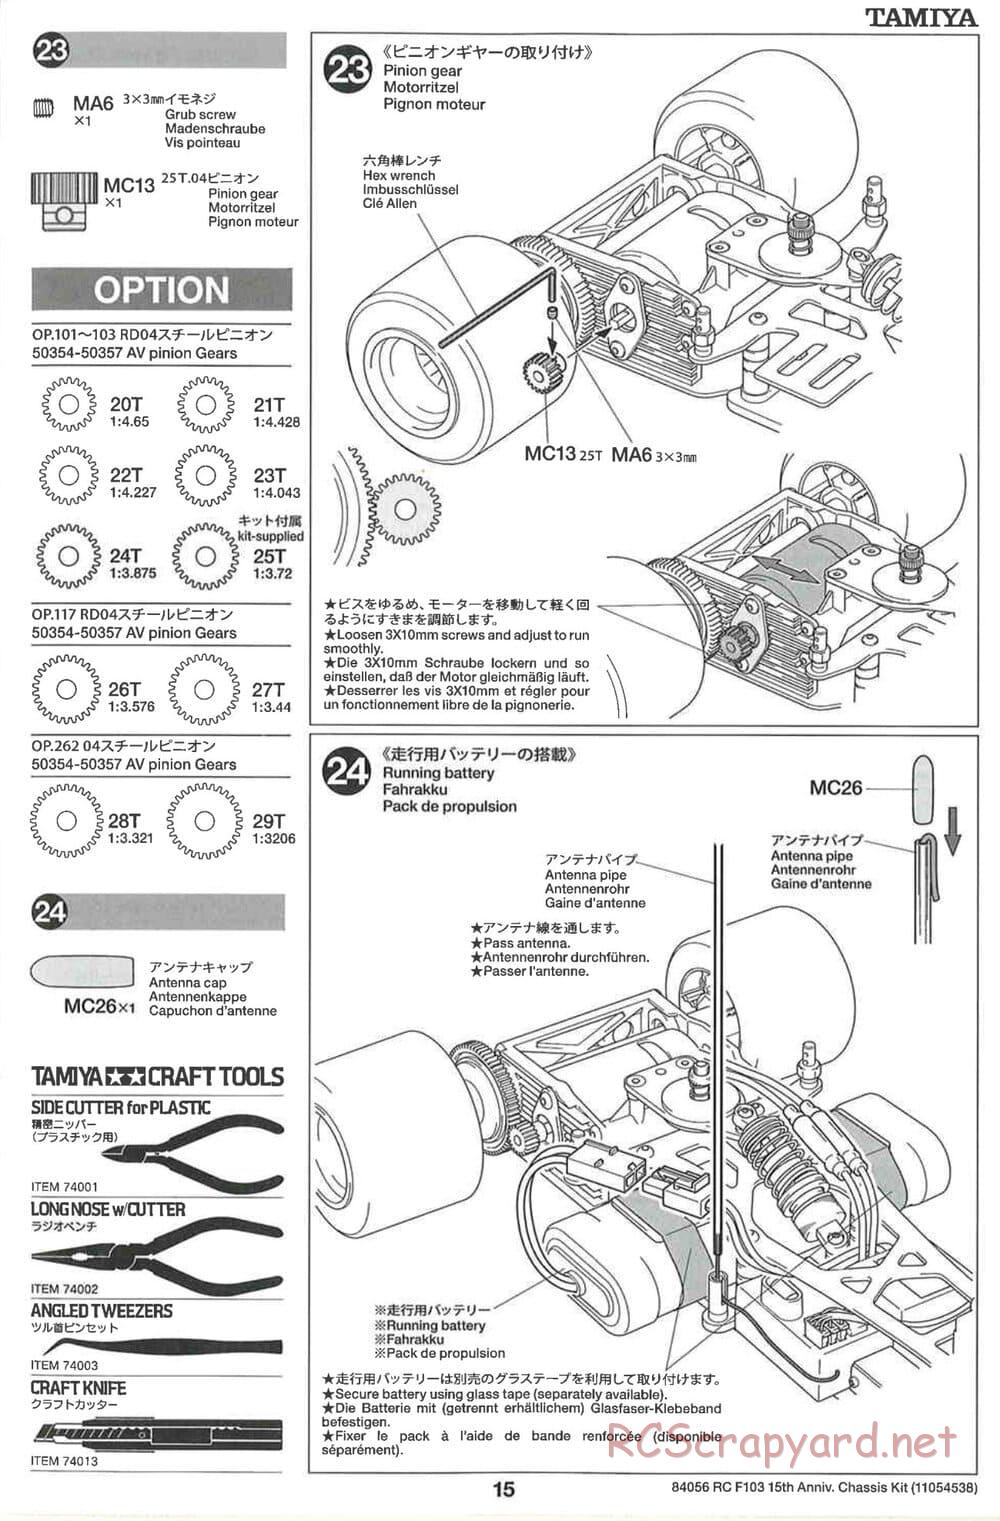 Tamiya - F103 15th Anniversary Chassis - Manual - Page 15